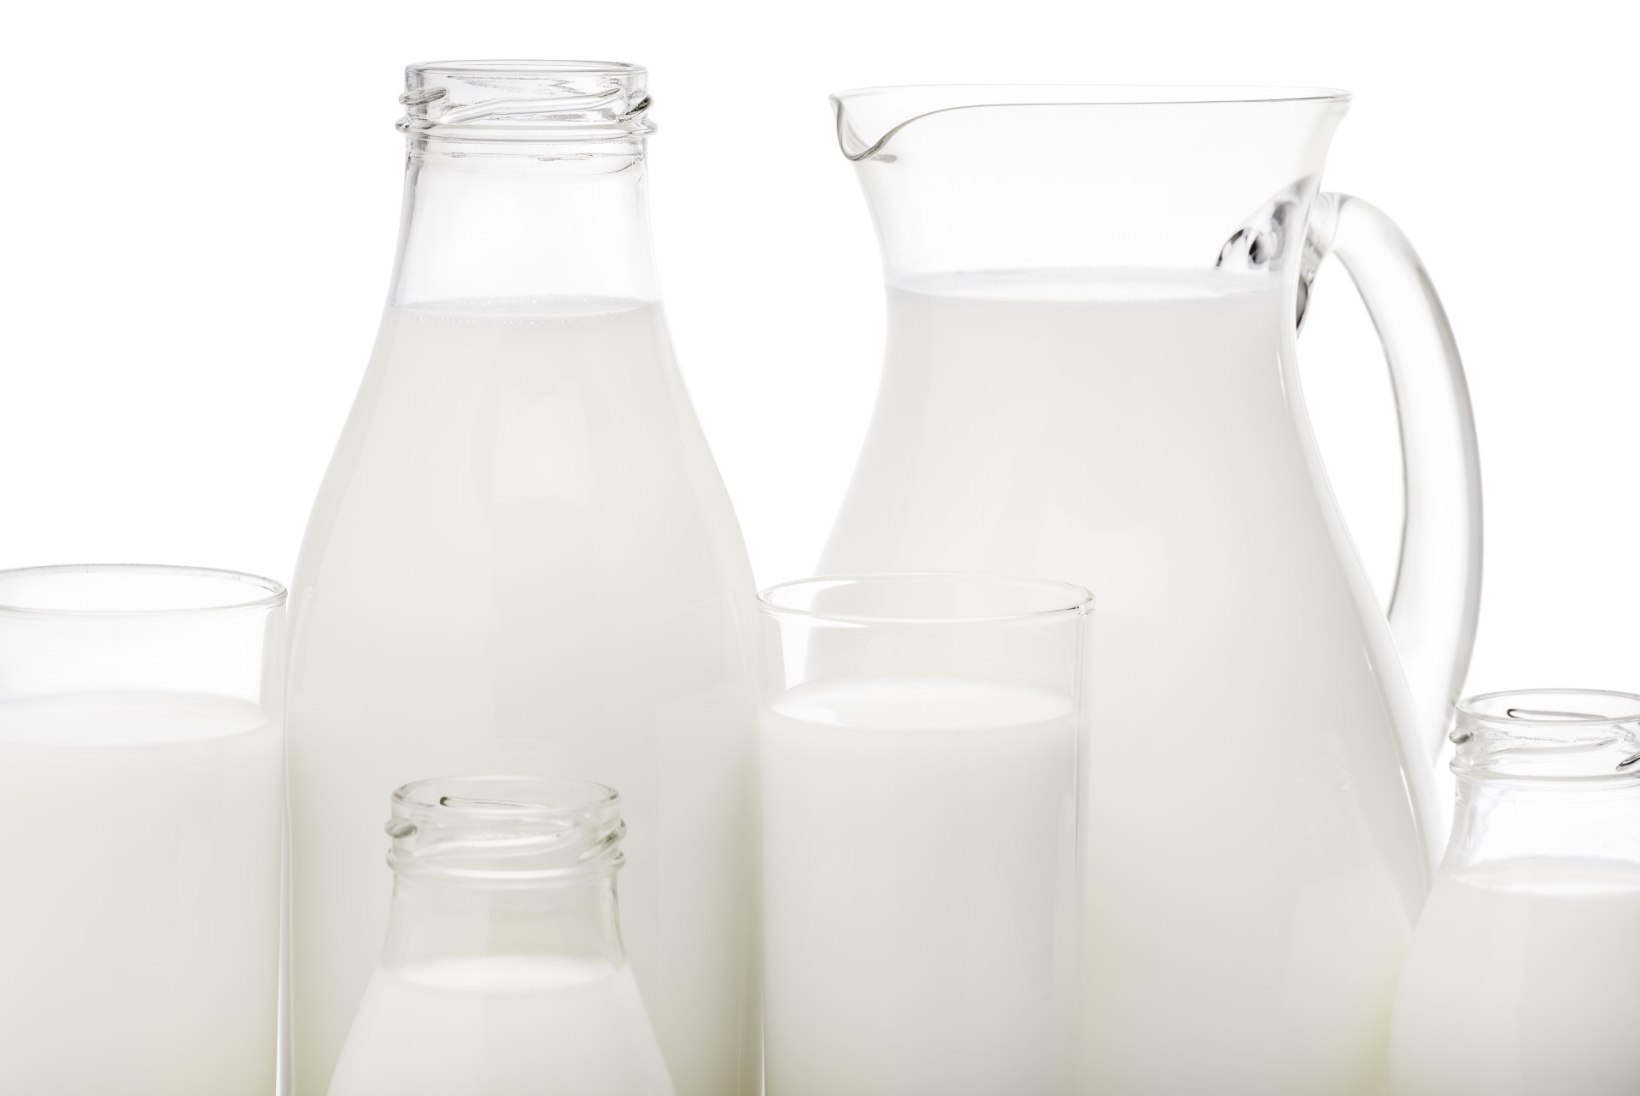 HEAD PIIMAPÄEVA! Millist piima teie joote - looma- või taimepiima?